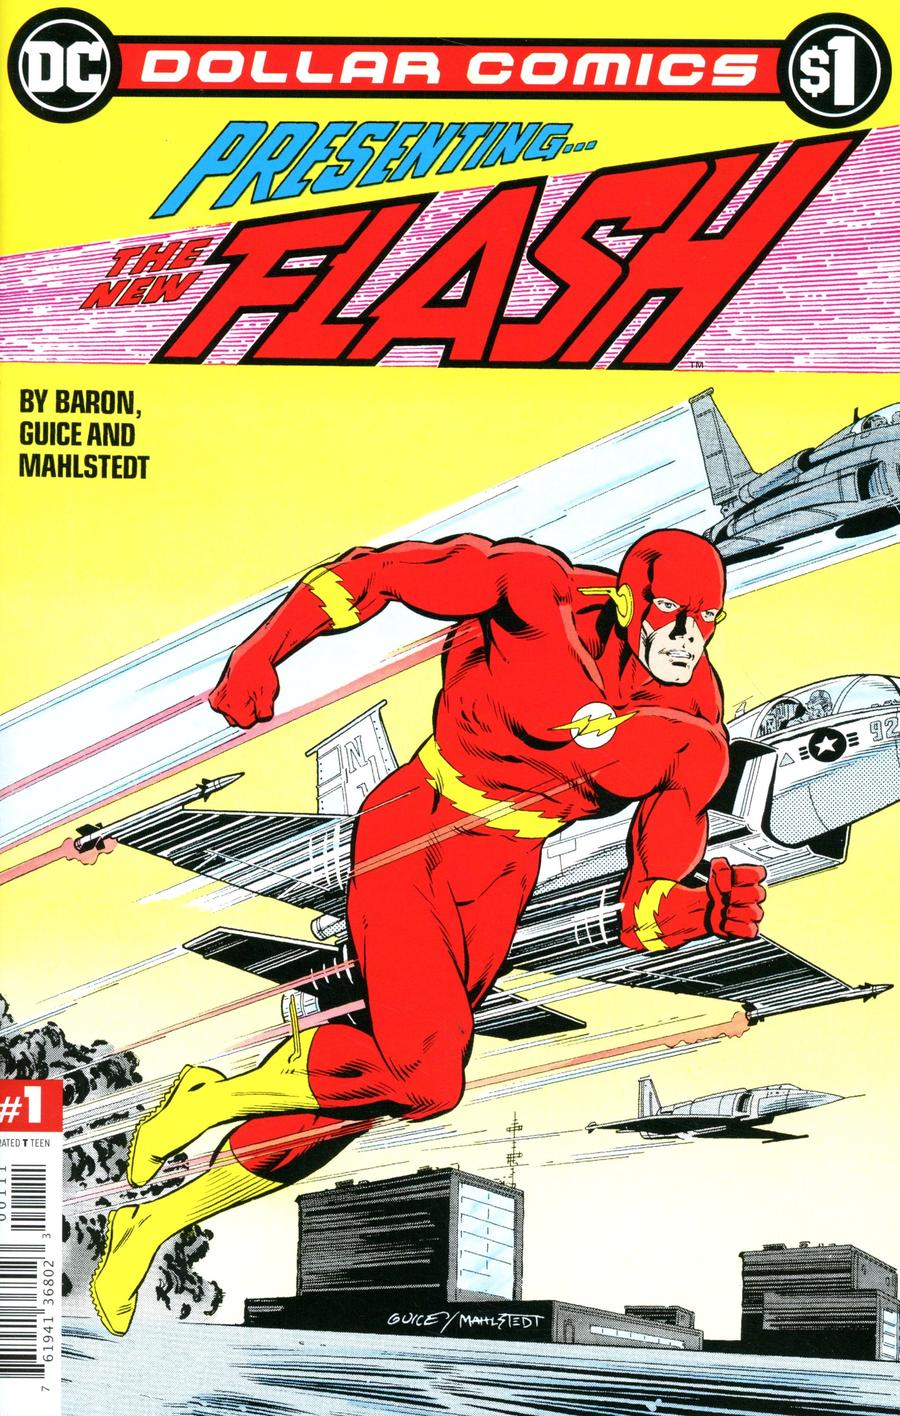 Dollar Comics Flash Vol 2 #1